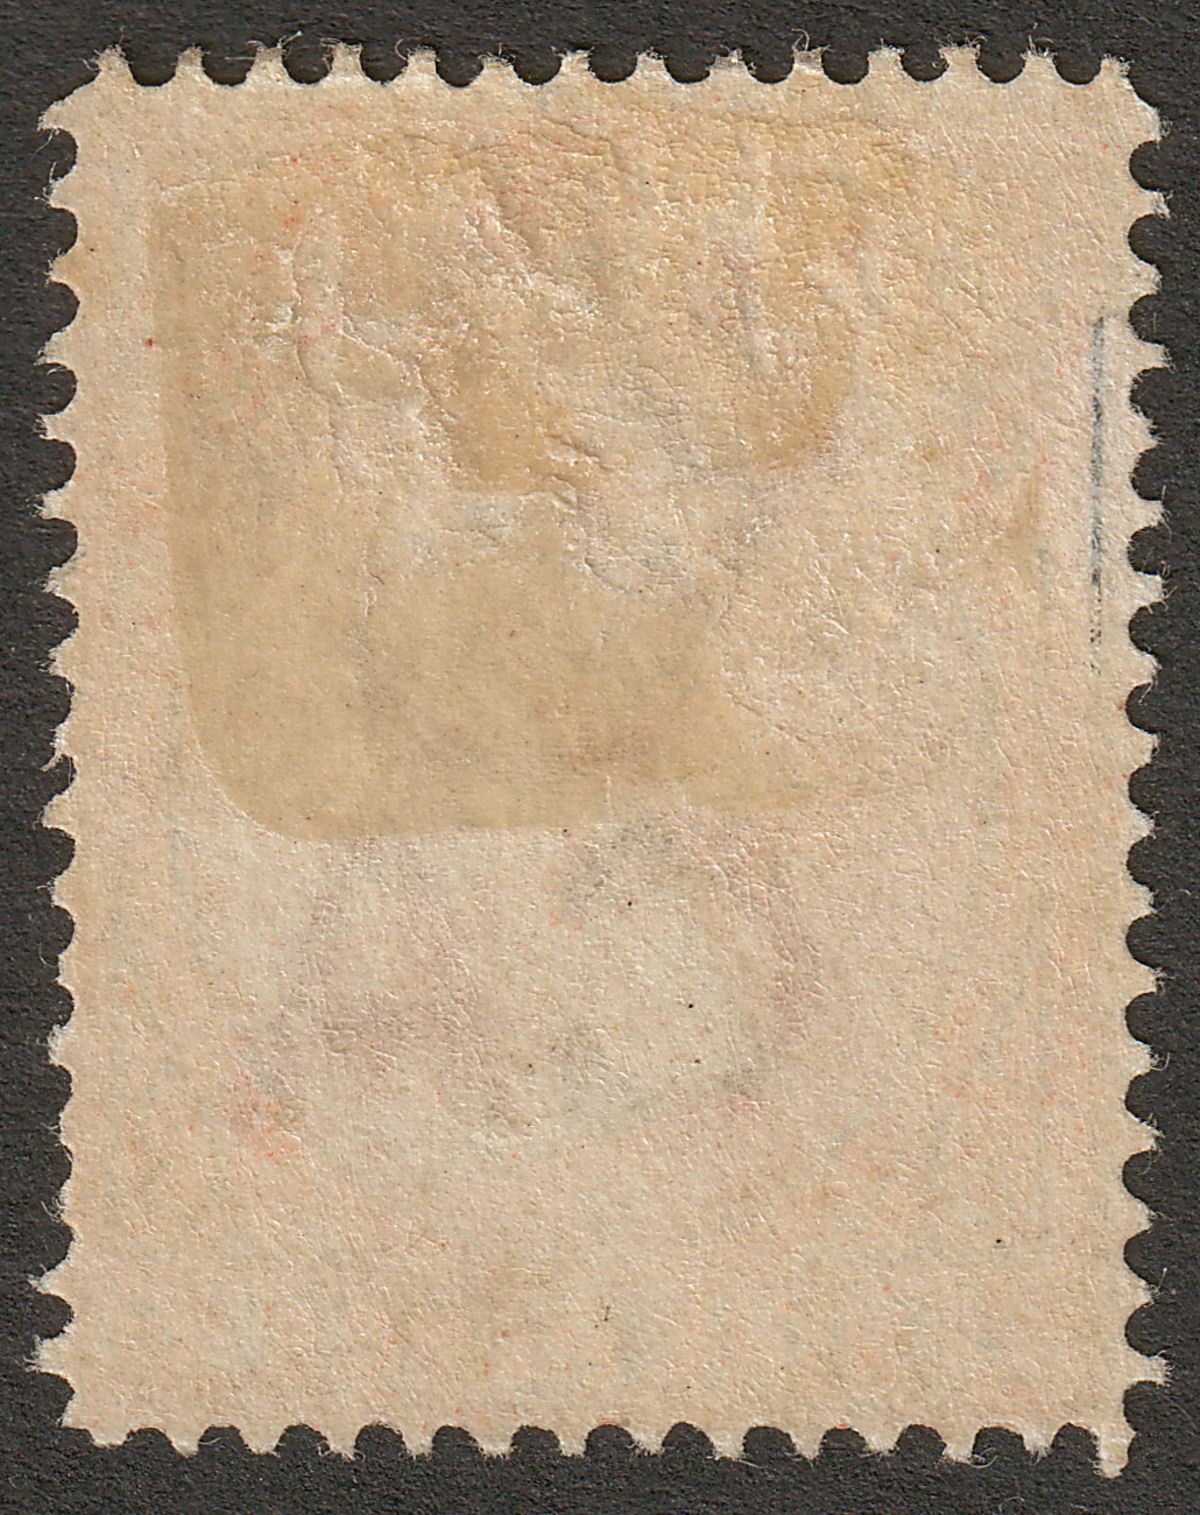 Falkland Islands 1895 QV 9d Pale Reddish Orange Mint SG35 cat £60